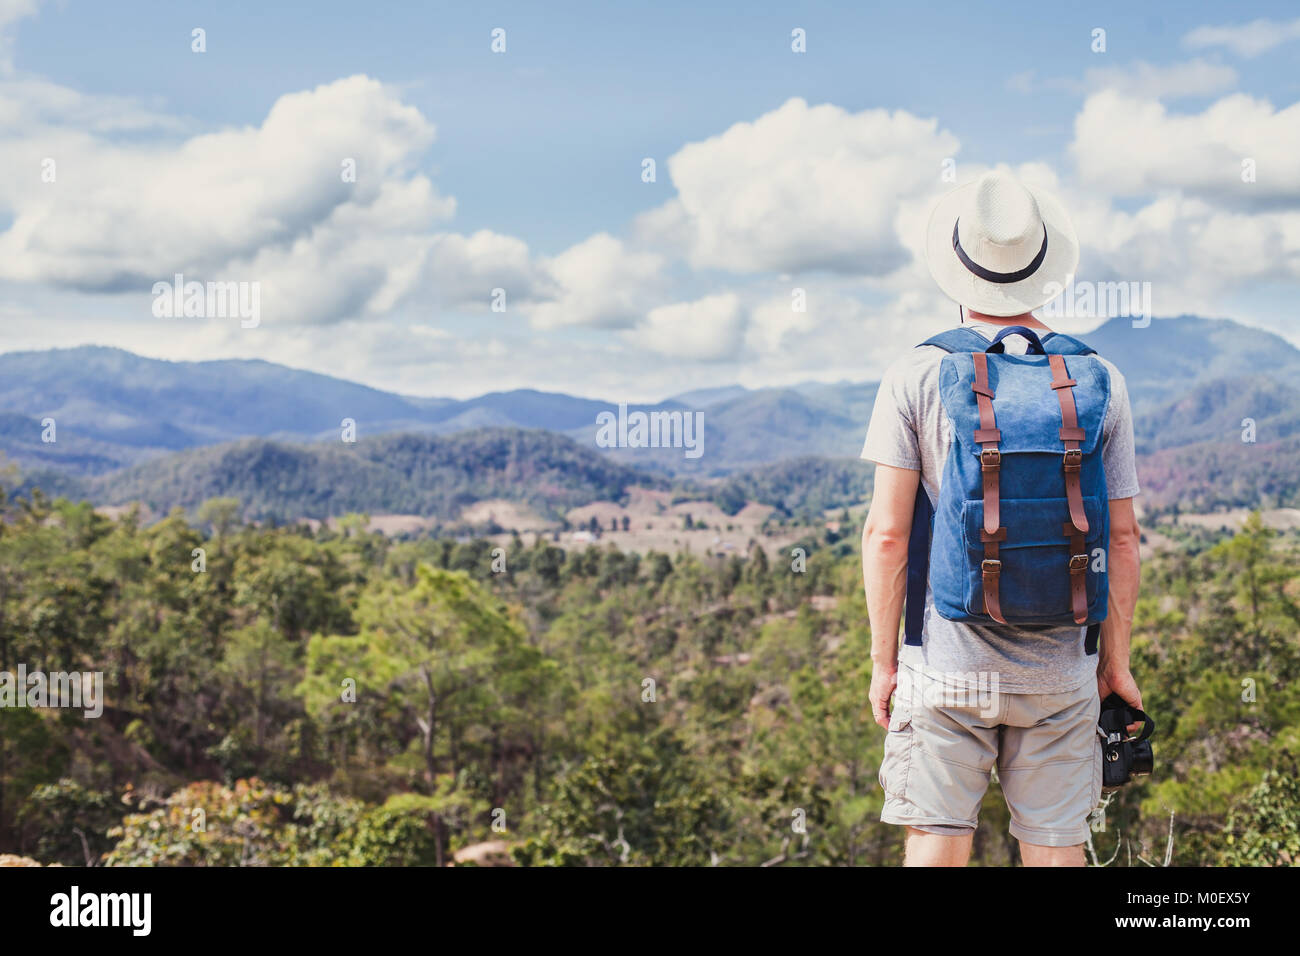 Estate trekking in montagna, turistico escursionista viaggi all'aperto, hipster con fotocamera zaino e guardando il paesaggio panoramico Foto Stock